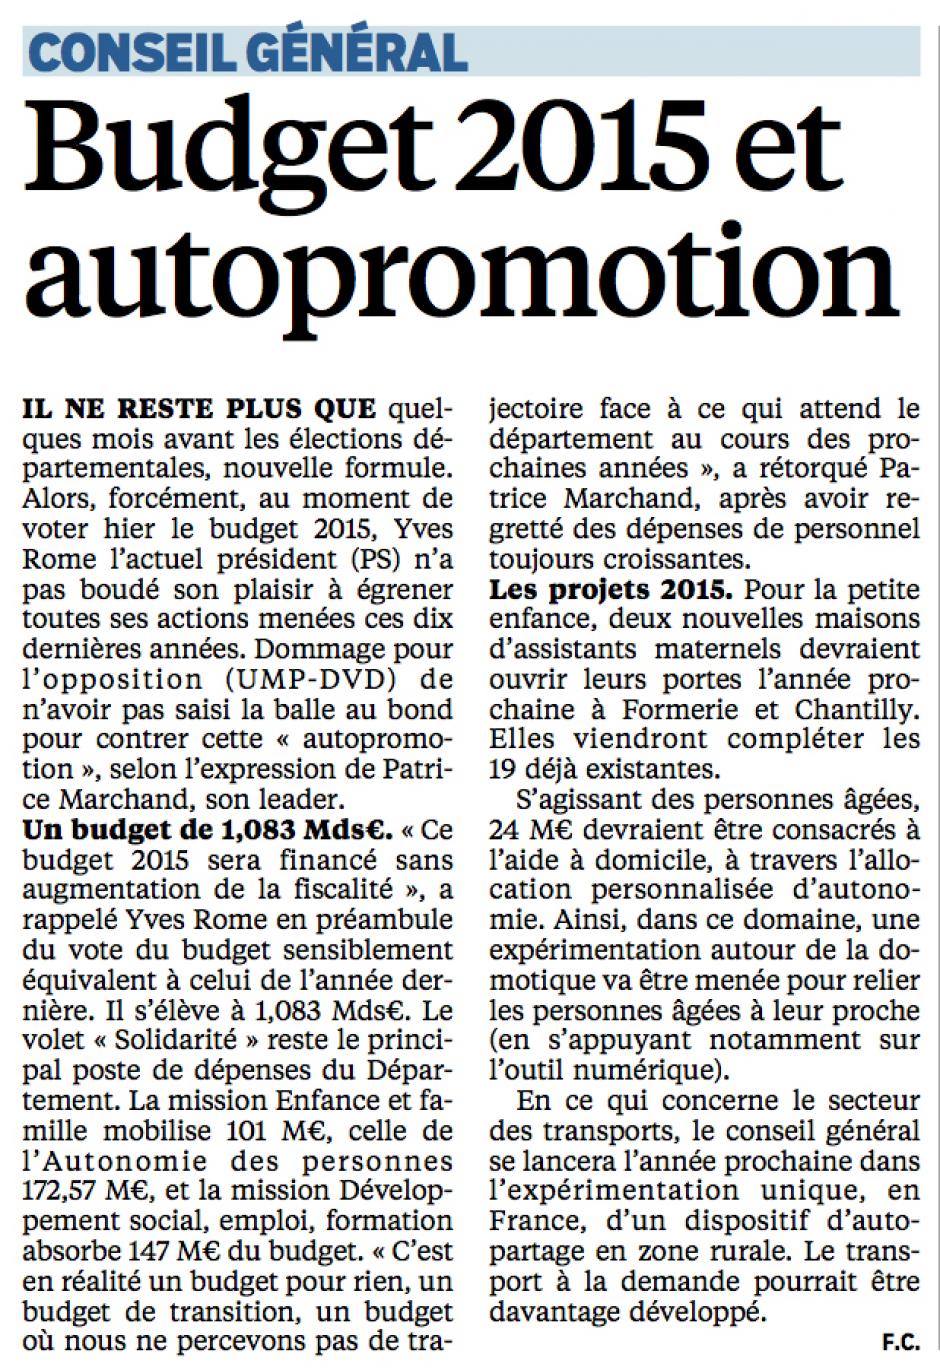 20141219-LeP-Oise-Conseil général : budget 2015 et autopromotion